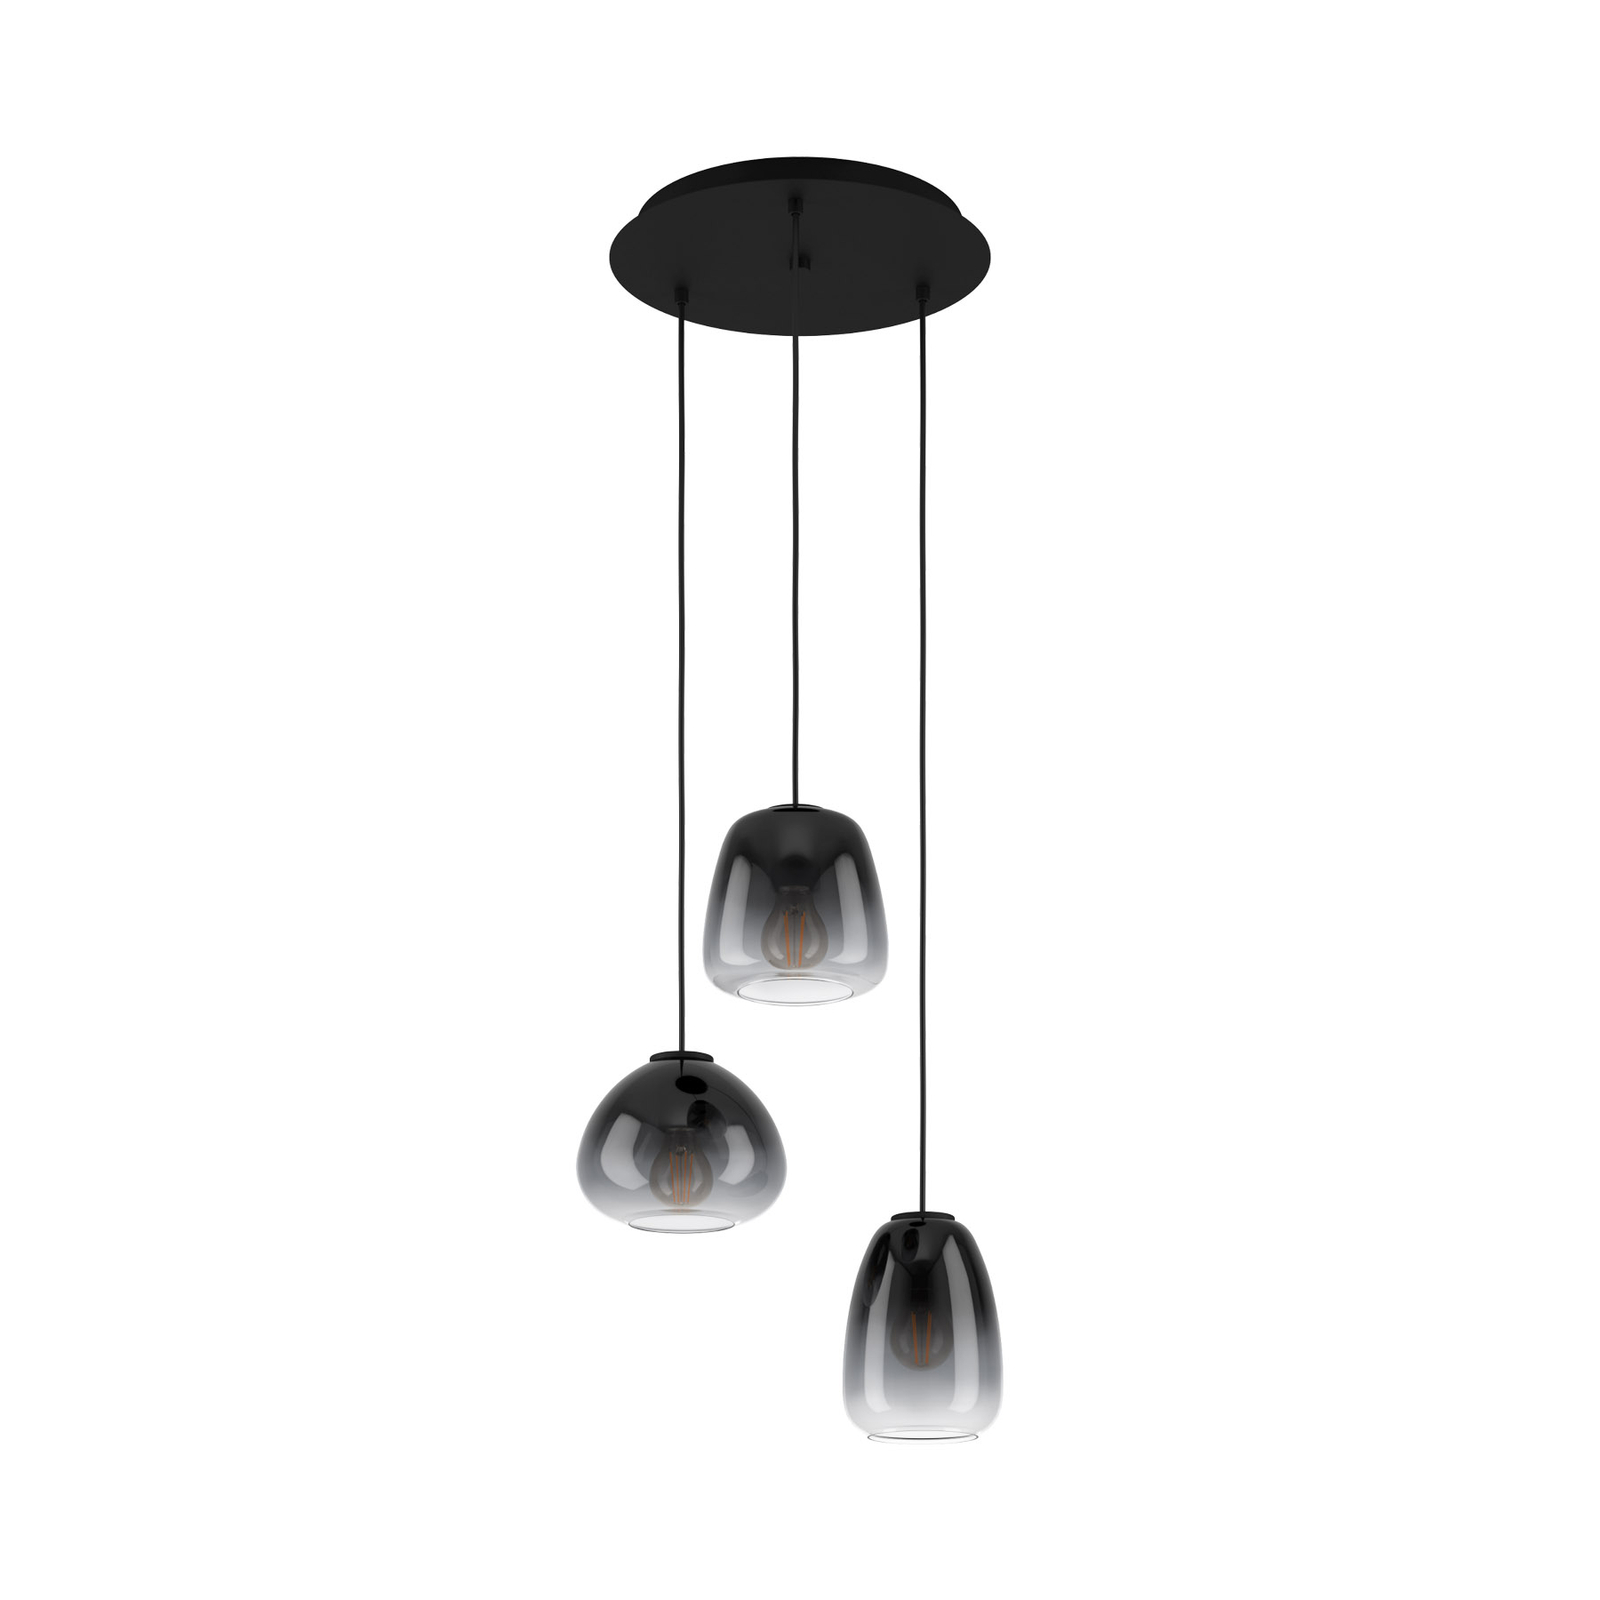 Aguilares hanging, smoked glass, 3-bulb circular